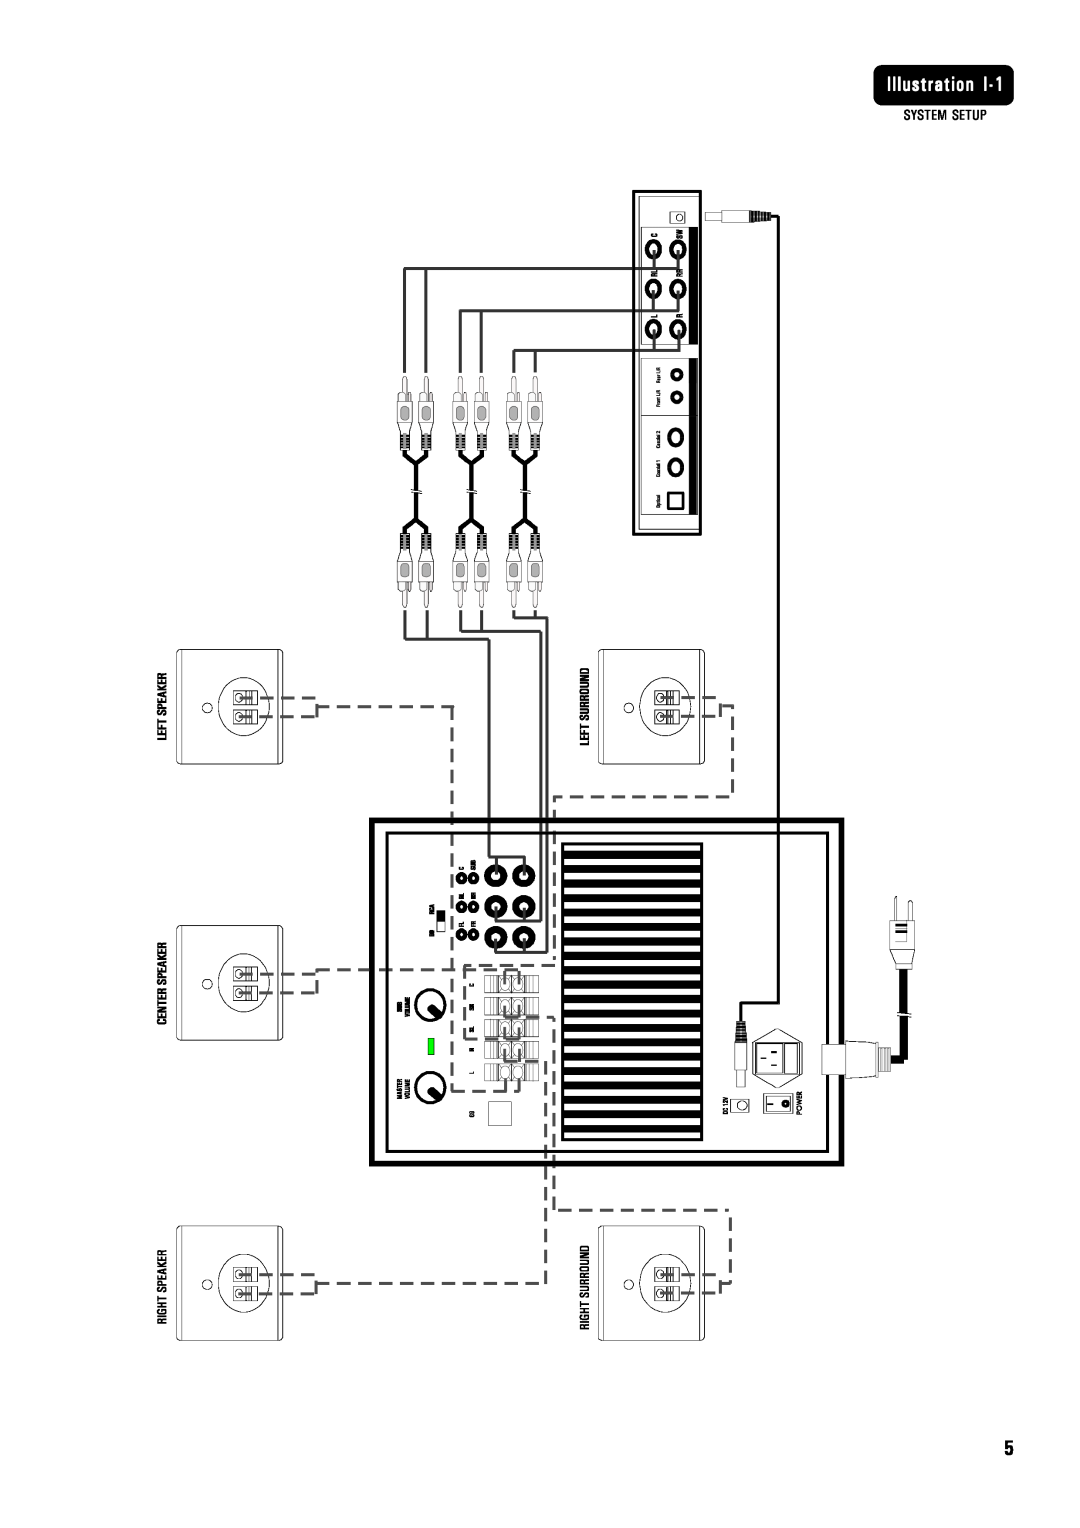 MidiLand 8200 owner manual Illustration, System Setup 